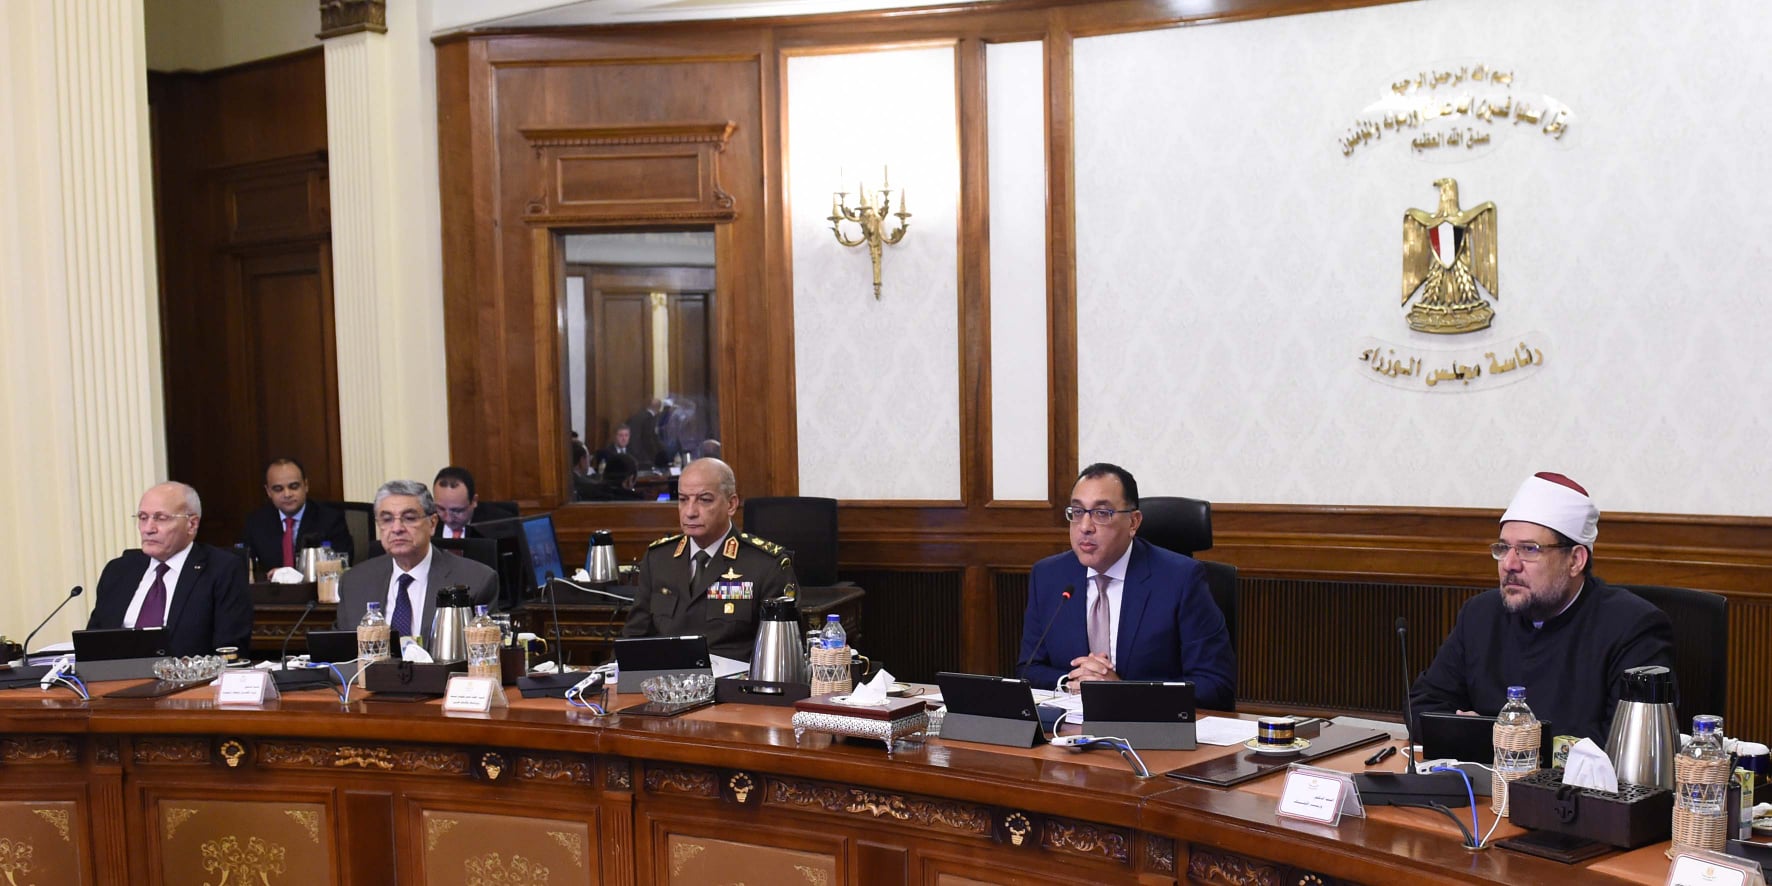 الحكومة المصرية تستعد لفرض قرار إجباري على المواطنين خلال المرحلة المُقبلة (فيديو)